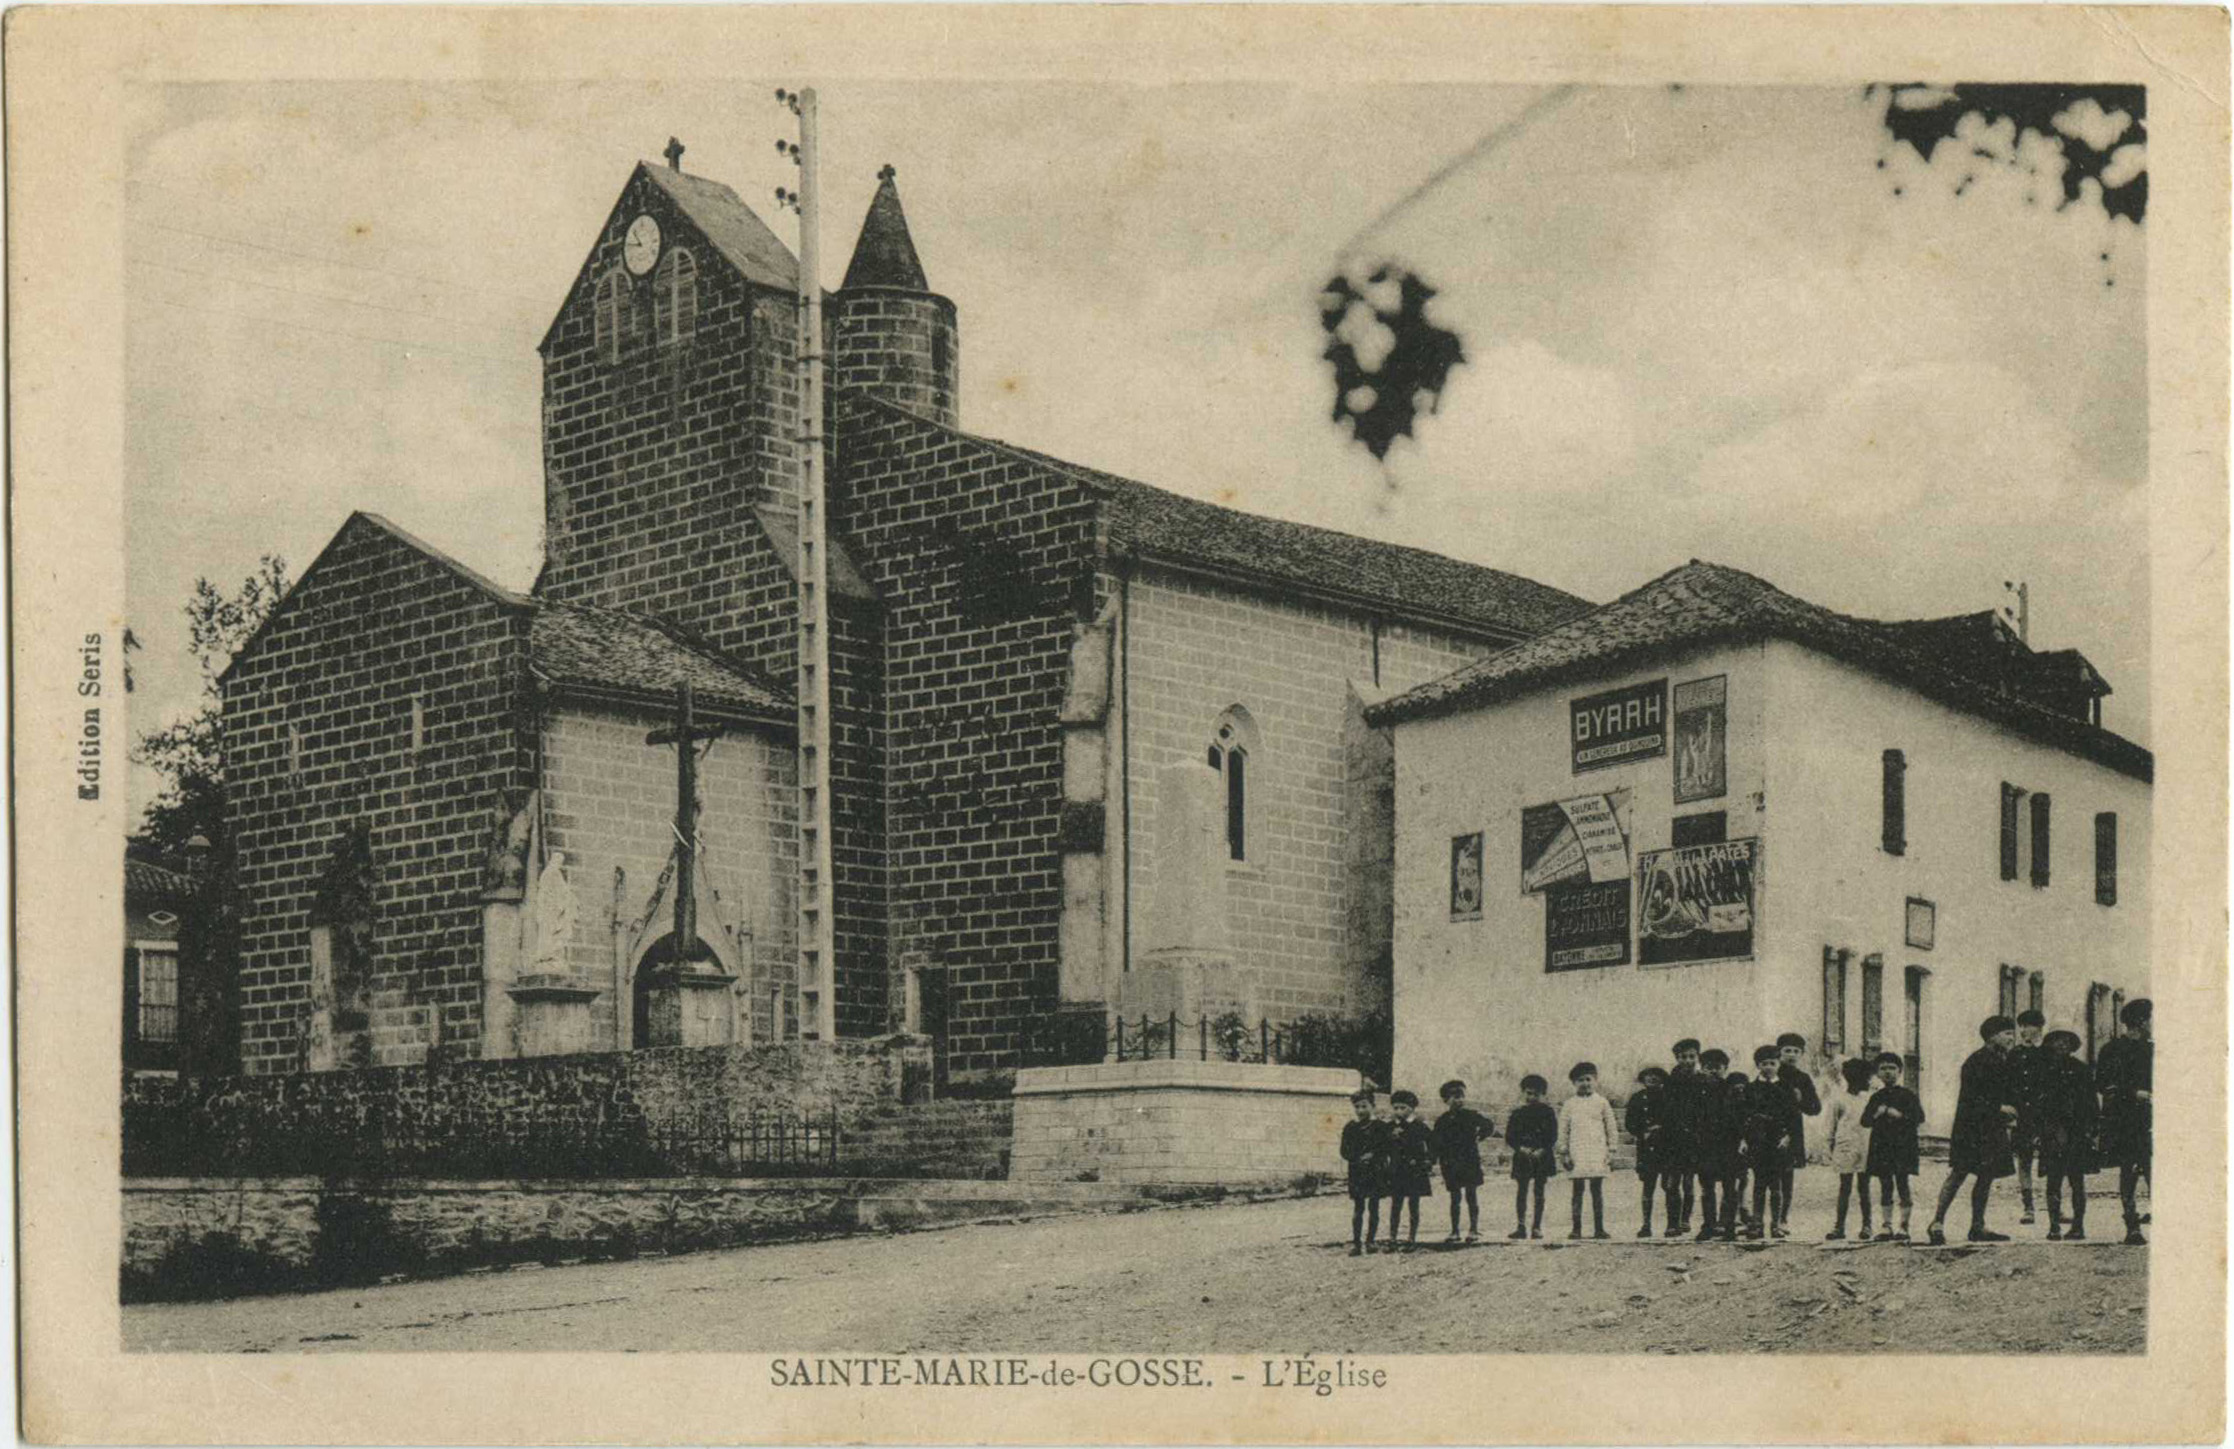 Sainte-Marie-de-Gosse - L'Église